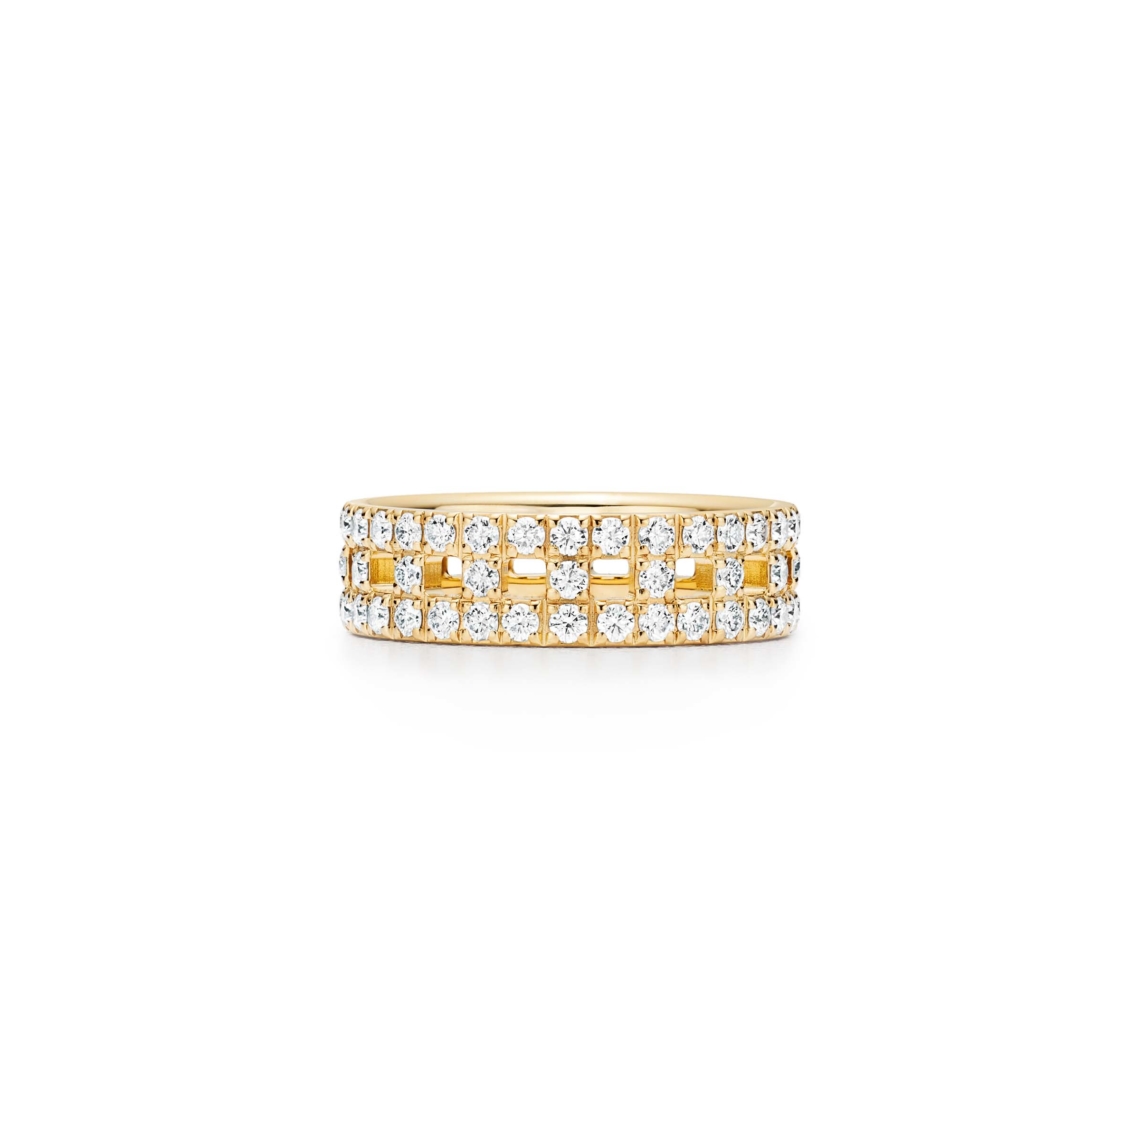 Tiffany T True narrow ring in 18k gold with pavé diamonds - Tiffany